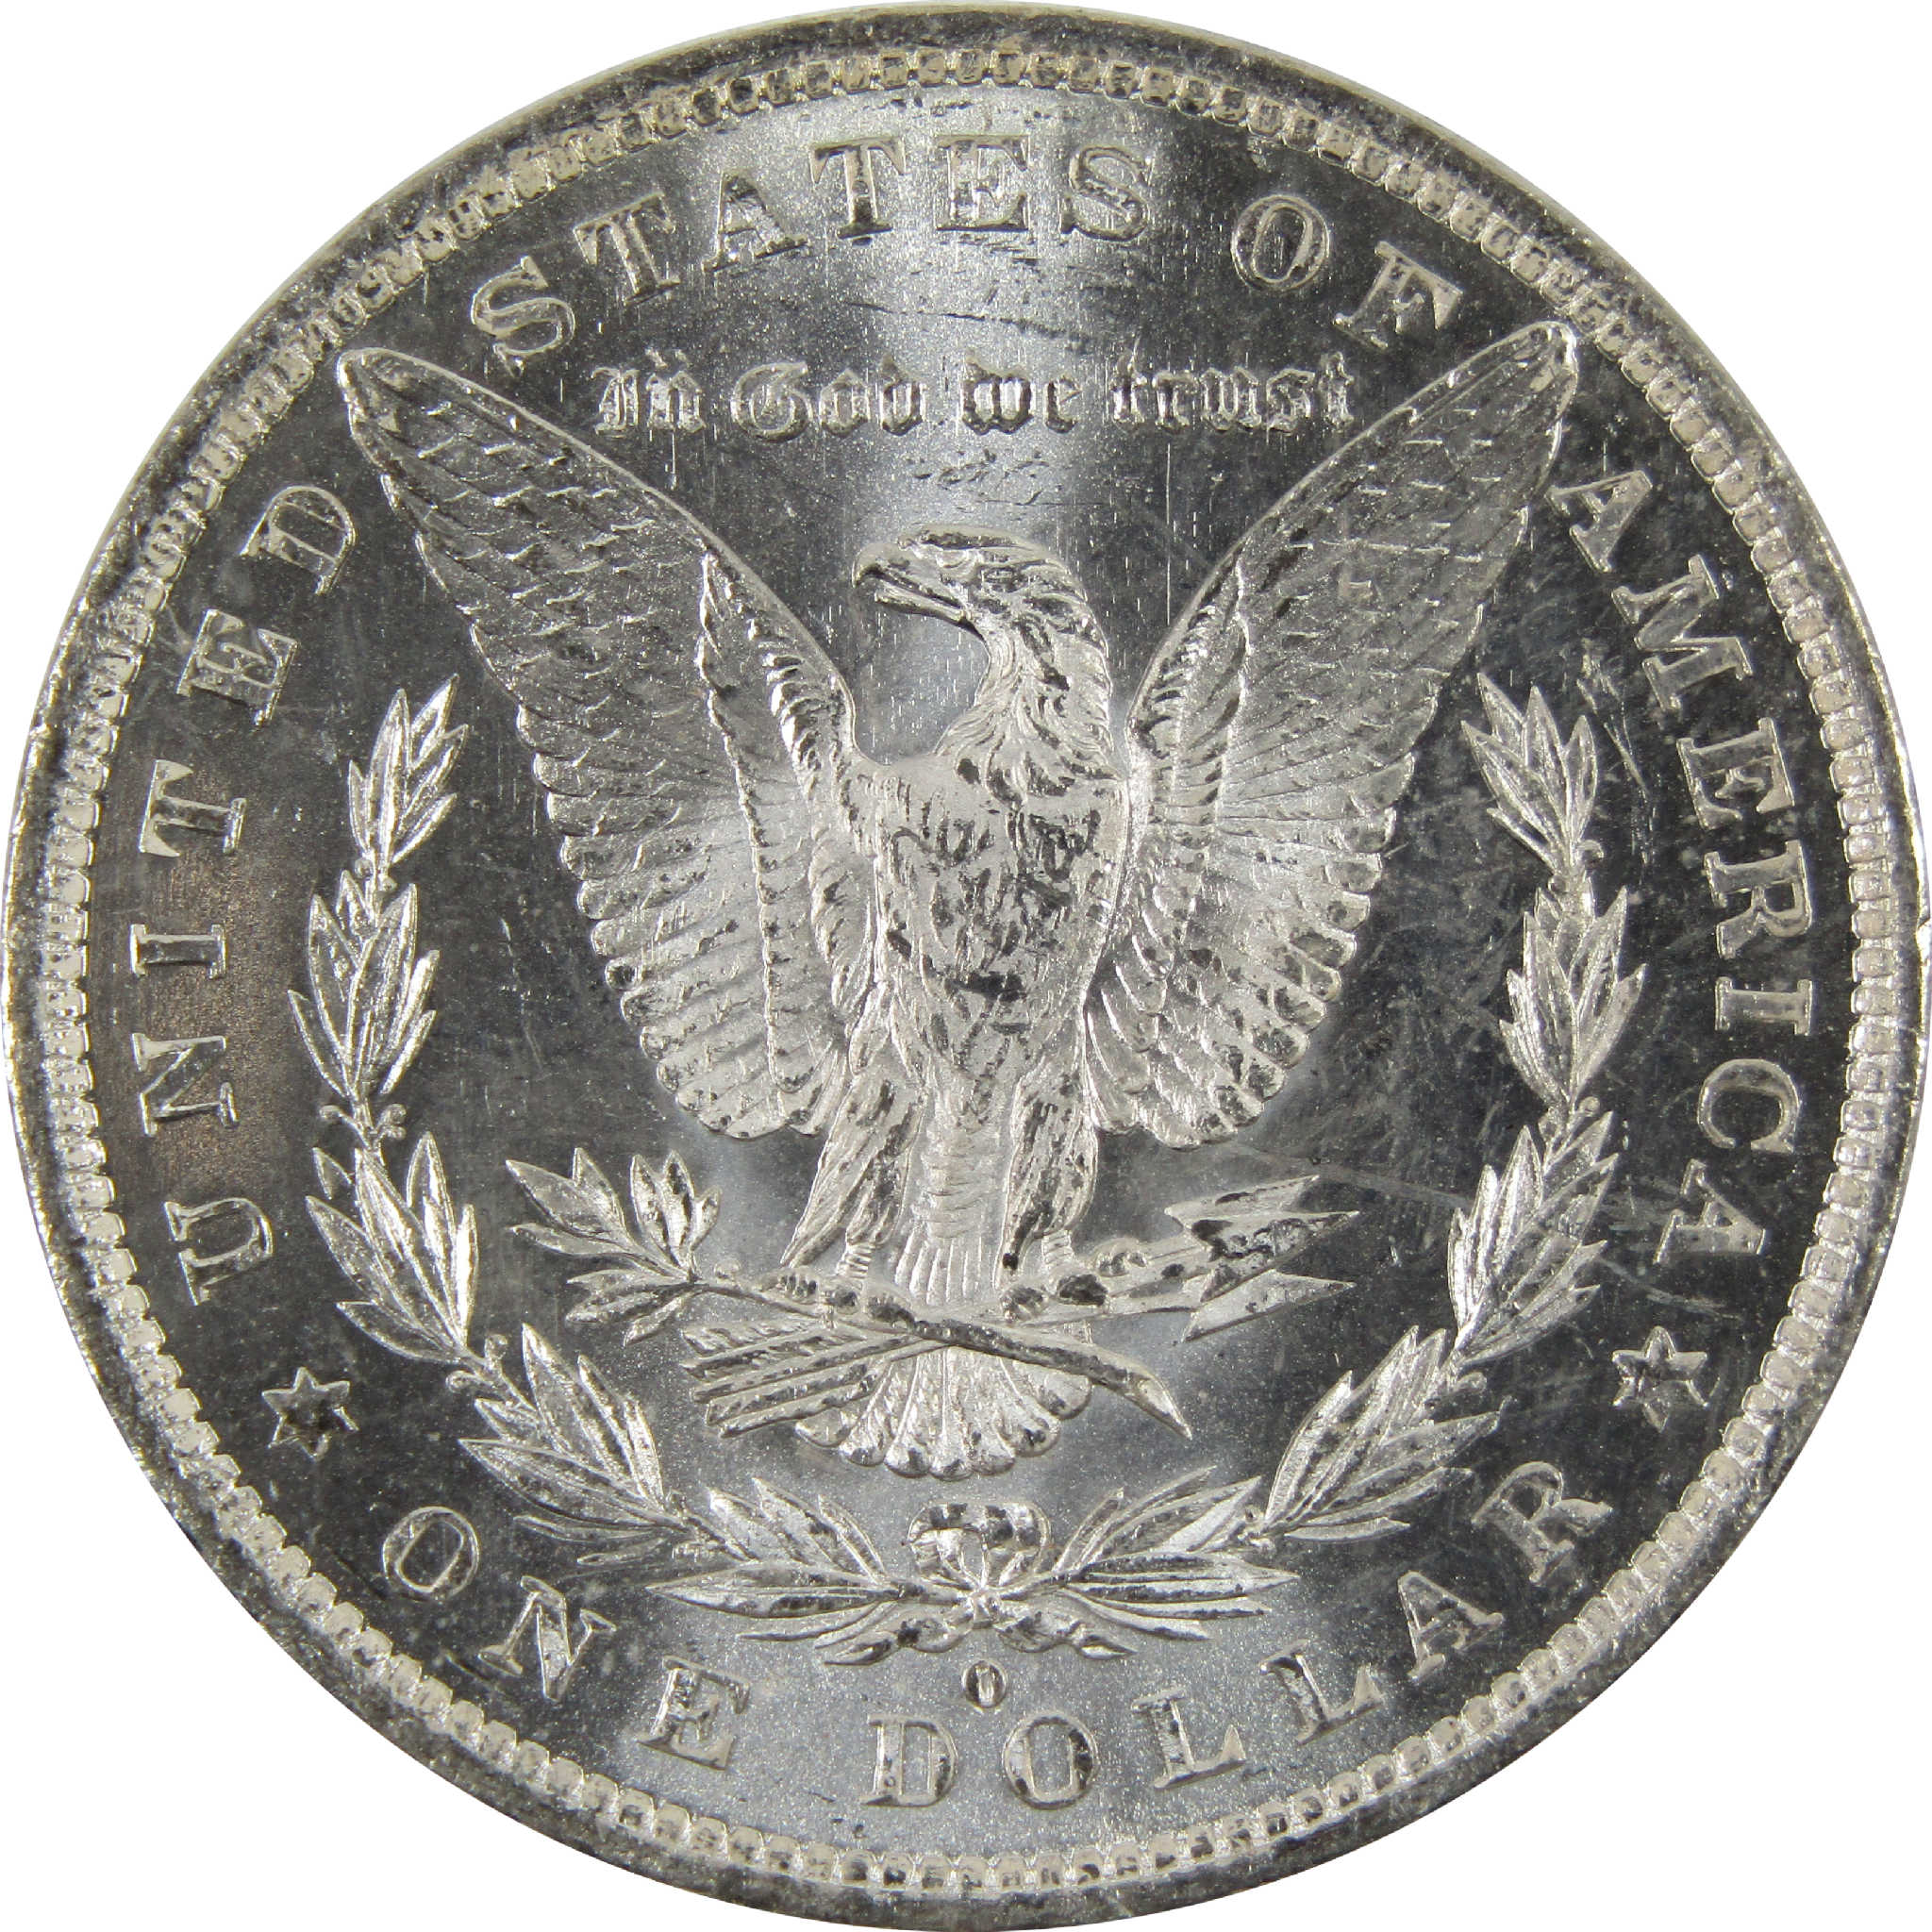 1882 O Morgan Dollar BU Uncirculated 90% Silver $1 Coin SKU:I8913 - Morgan coin - Morgan silver dollar - Morgan silver dollar for sale - Profile Coins &amp; Collectibles